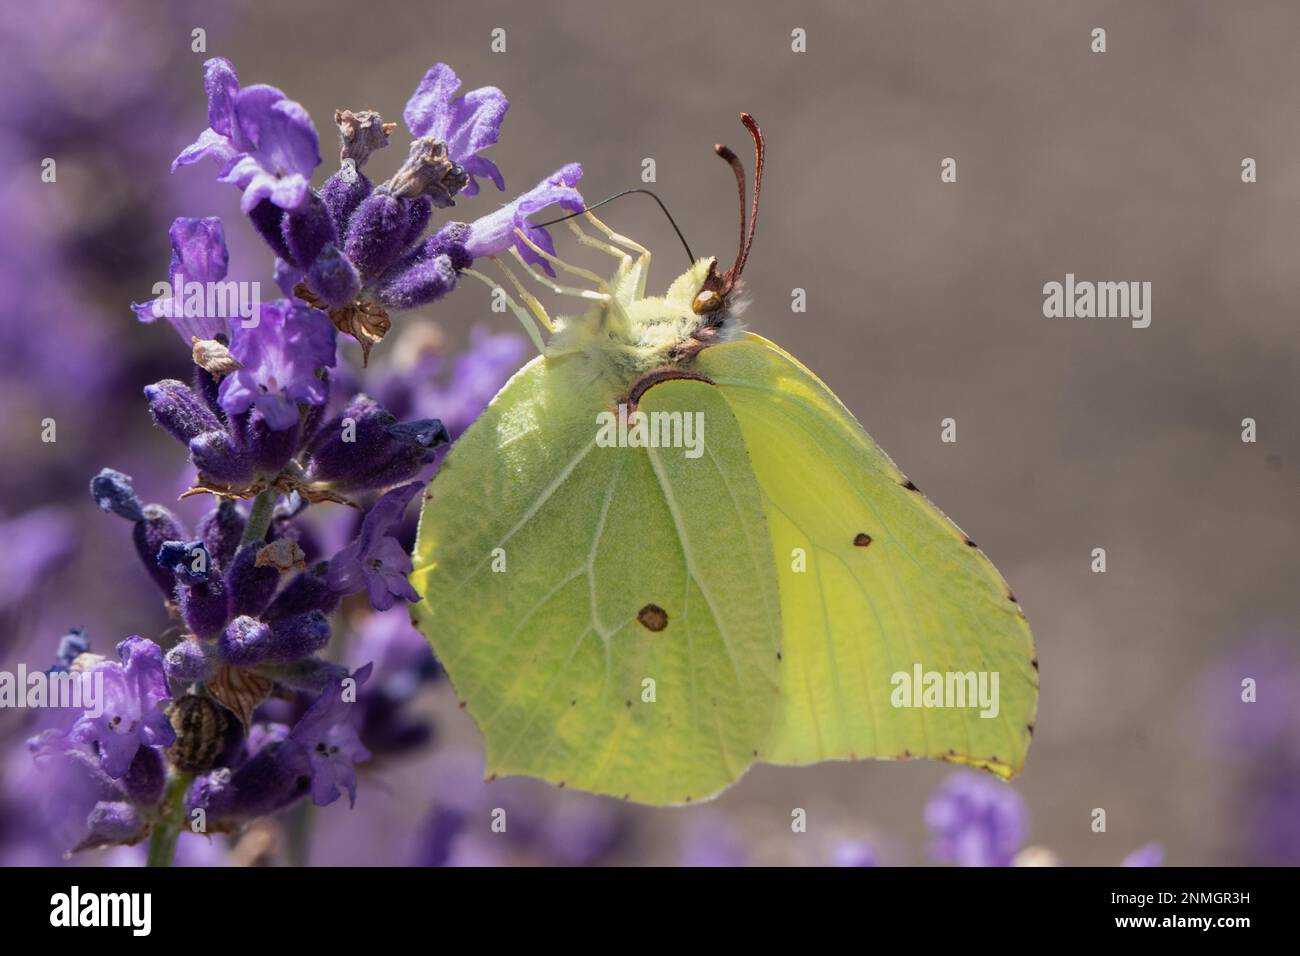 Zitronen-Schmetterling-Schmetterling mit geschlossenen Flügeln, die an lila Blüten hängen, die nach links aussehen Stockfoto